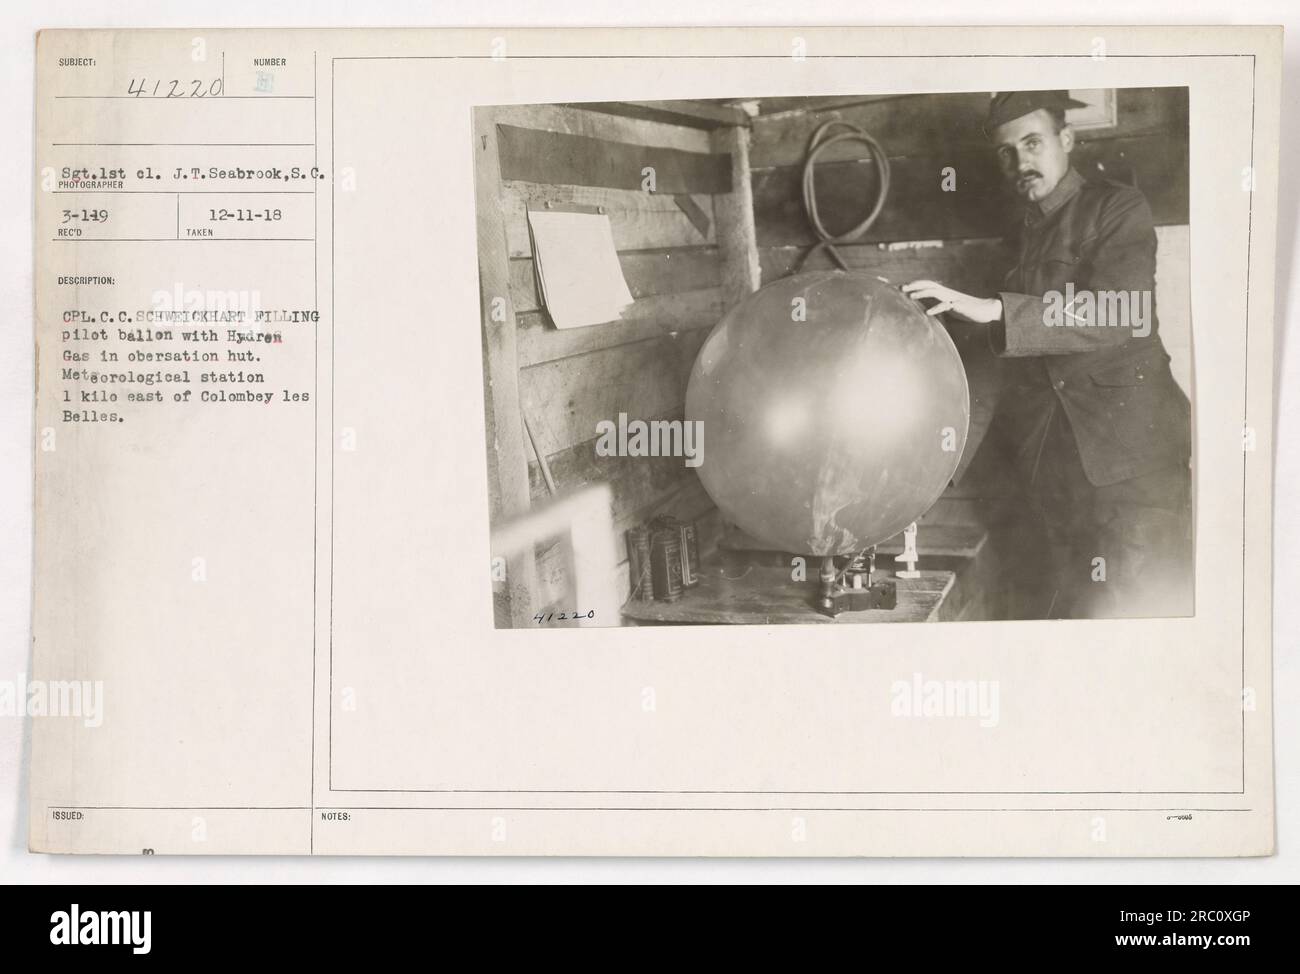 SGT.1. cl. J.T. Seabrook, S.c., wird gesehen, wie er einen mit Wasserstoffgas gefüllten Pilotenballon in einer Wetterstation betreibt, die sich 1 km östlich von Colombey les Belles befindet. Das Foto wurde von CPL aufgenommen. C. C. Schweickhart Pilling, ausgestellt am 12-11-18. Das Bild hat die Identifikationsnummer 48220. Stockfoto